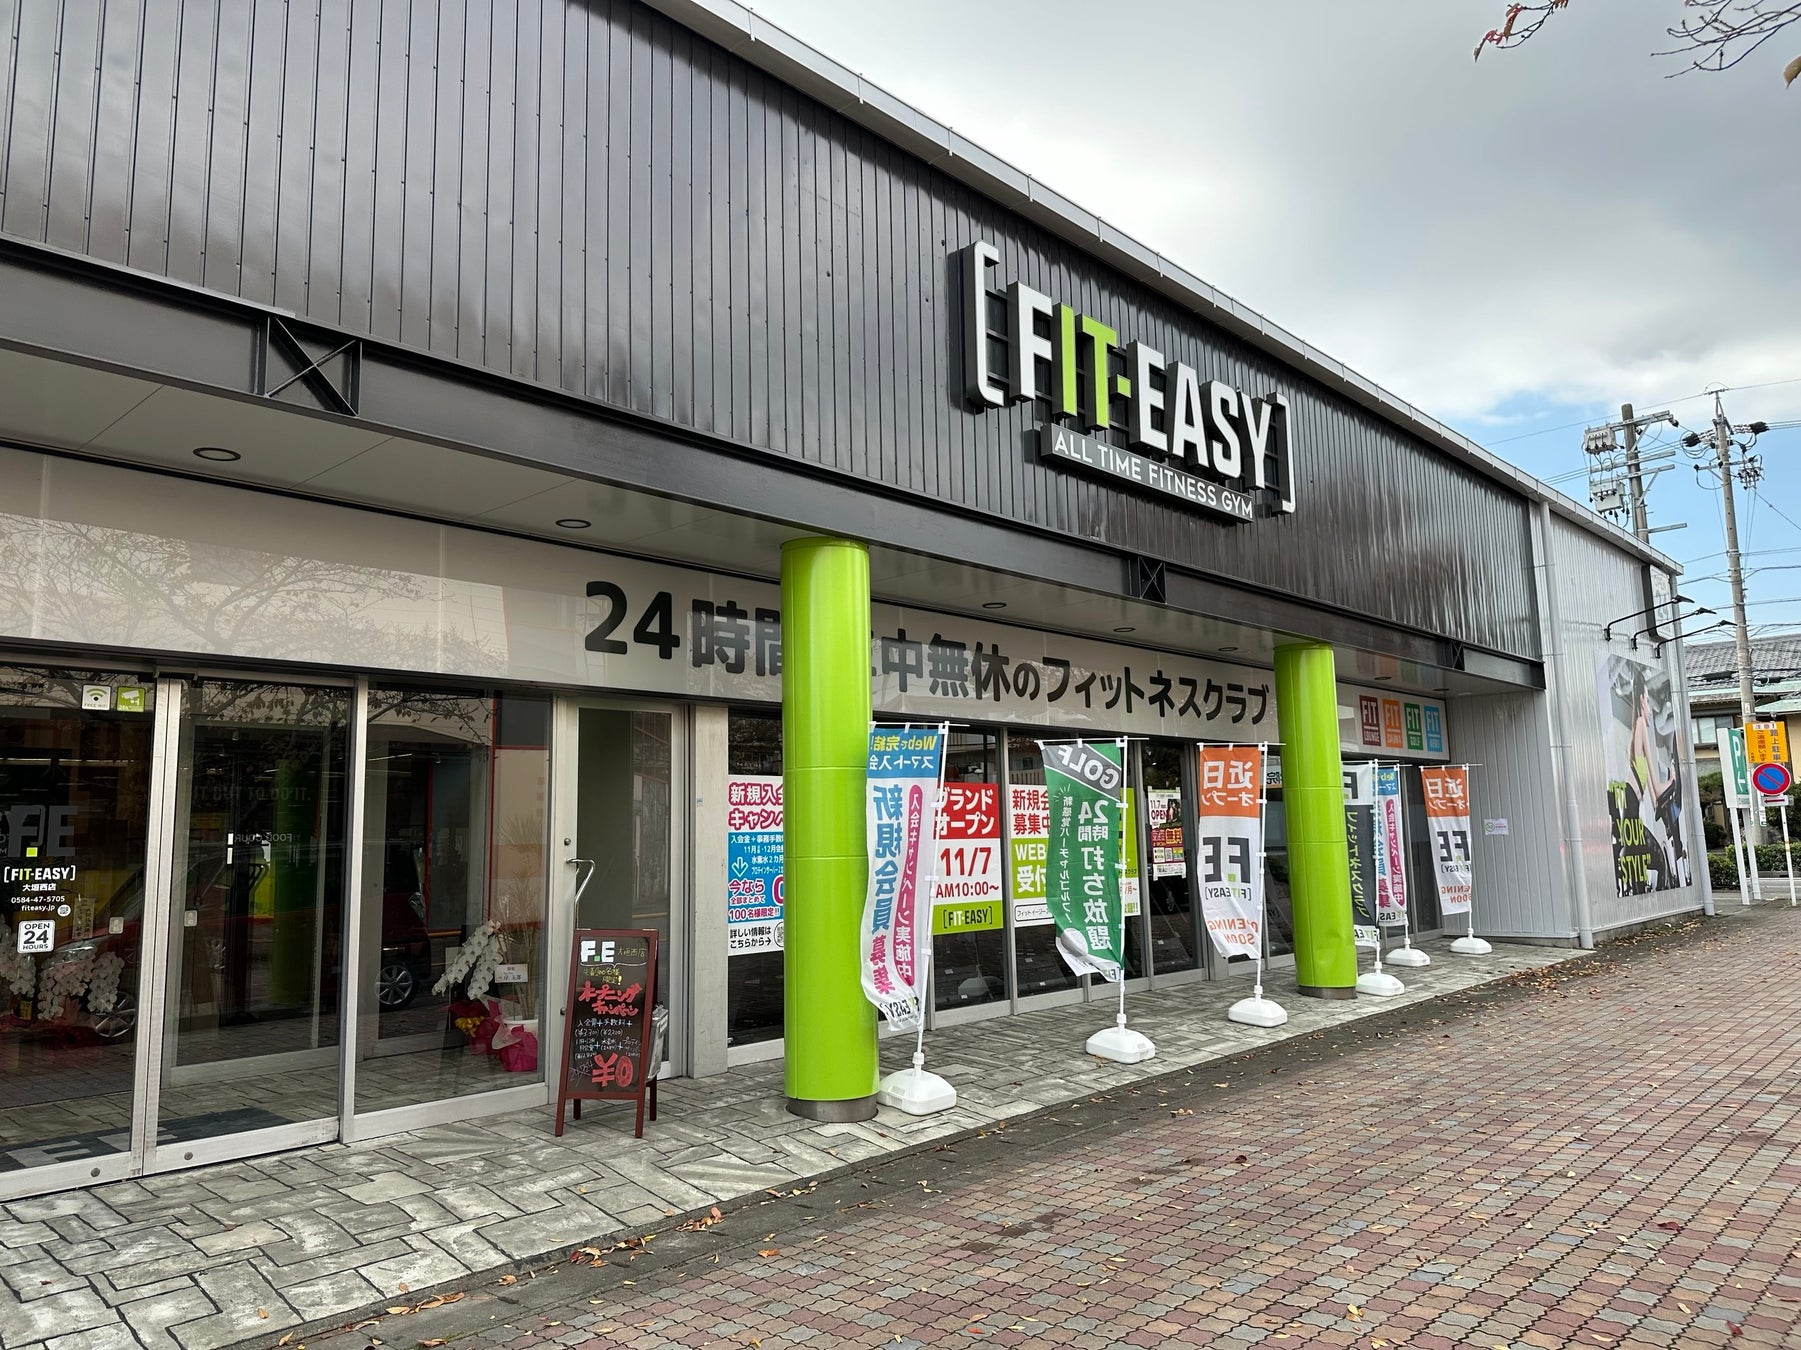 【グランドオープン】FIT-EASY大垣西店がグランドオープンしました。（24時間アミューズメント型フィットネスクラブ）